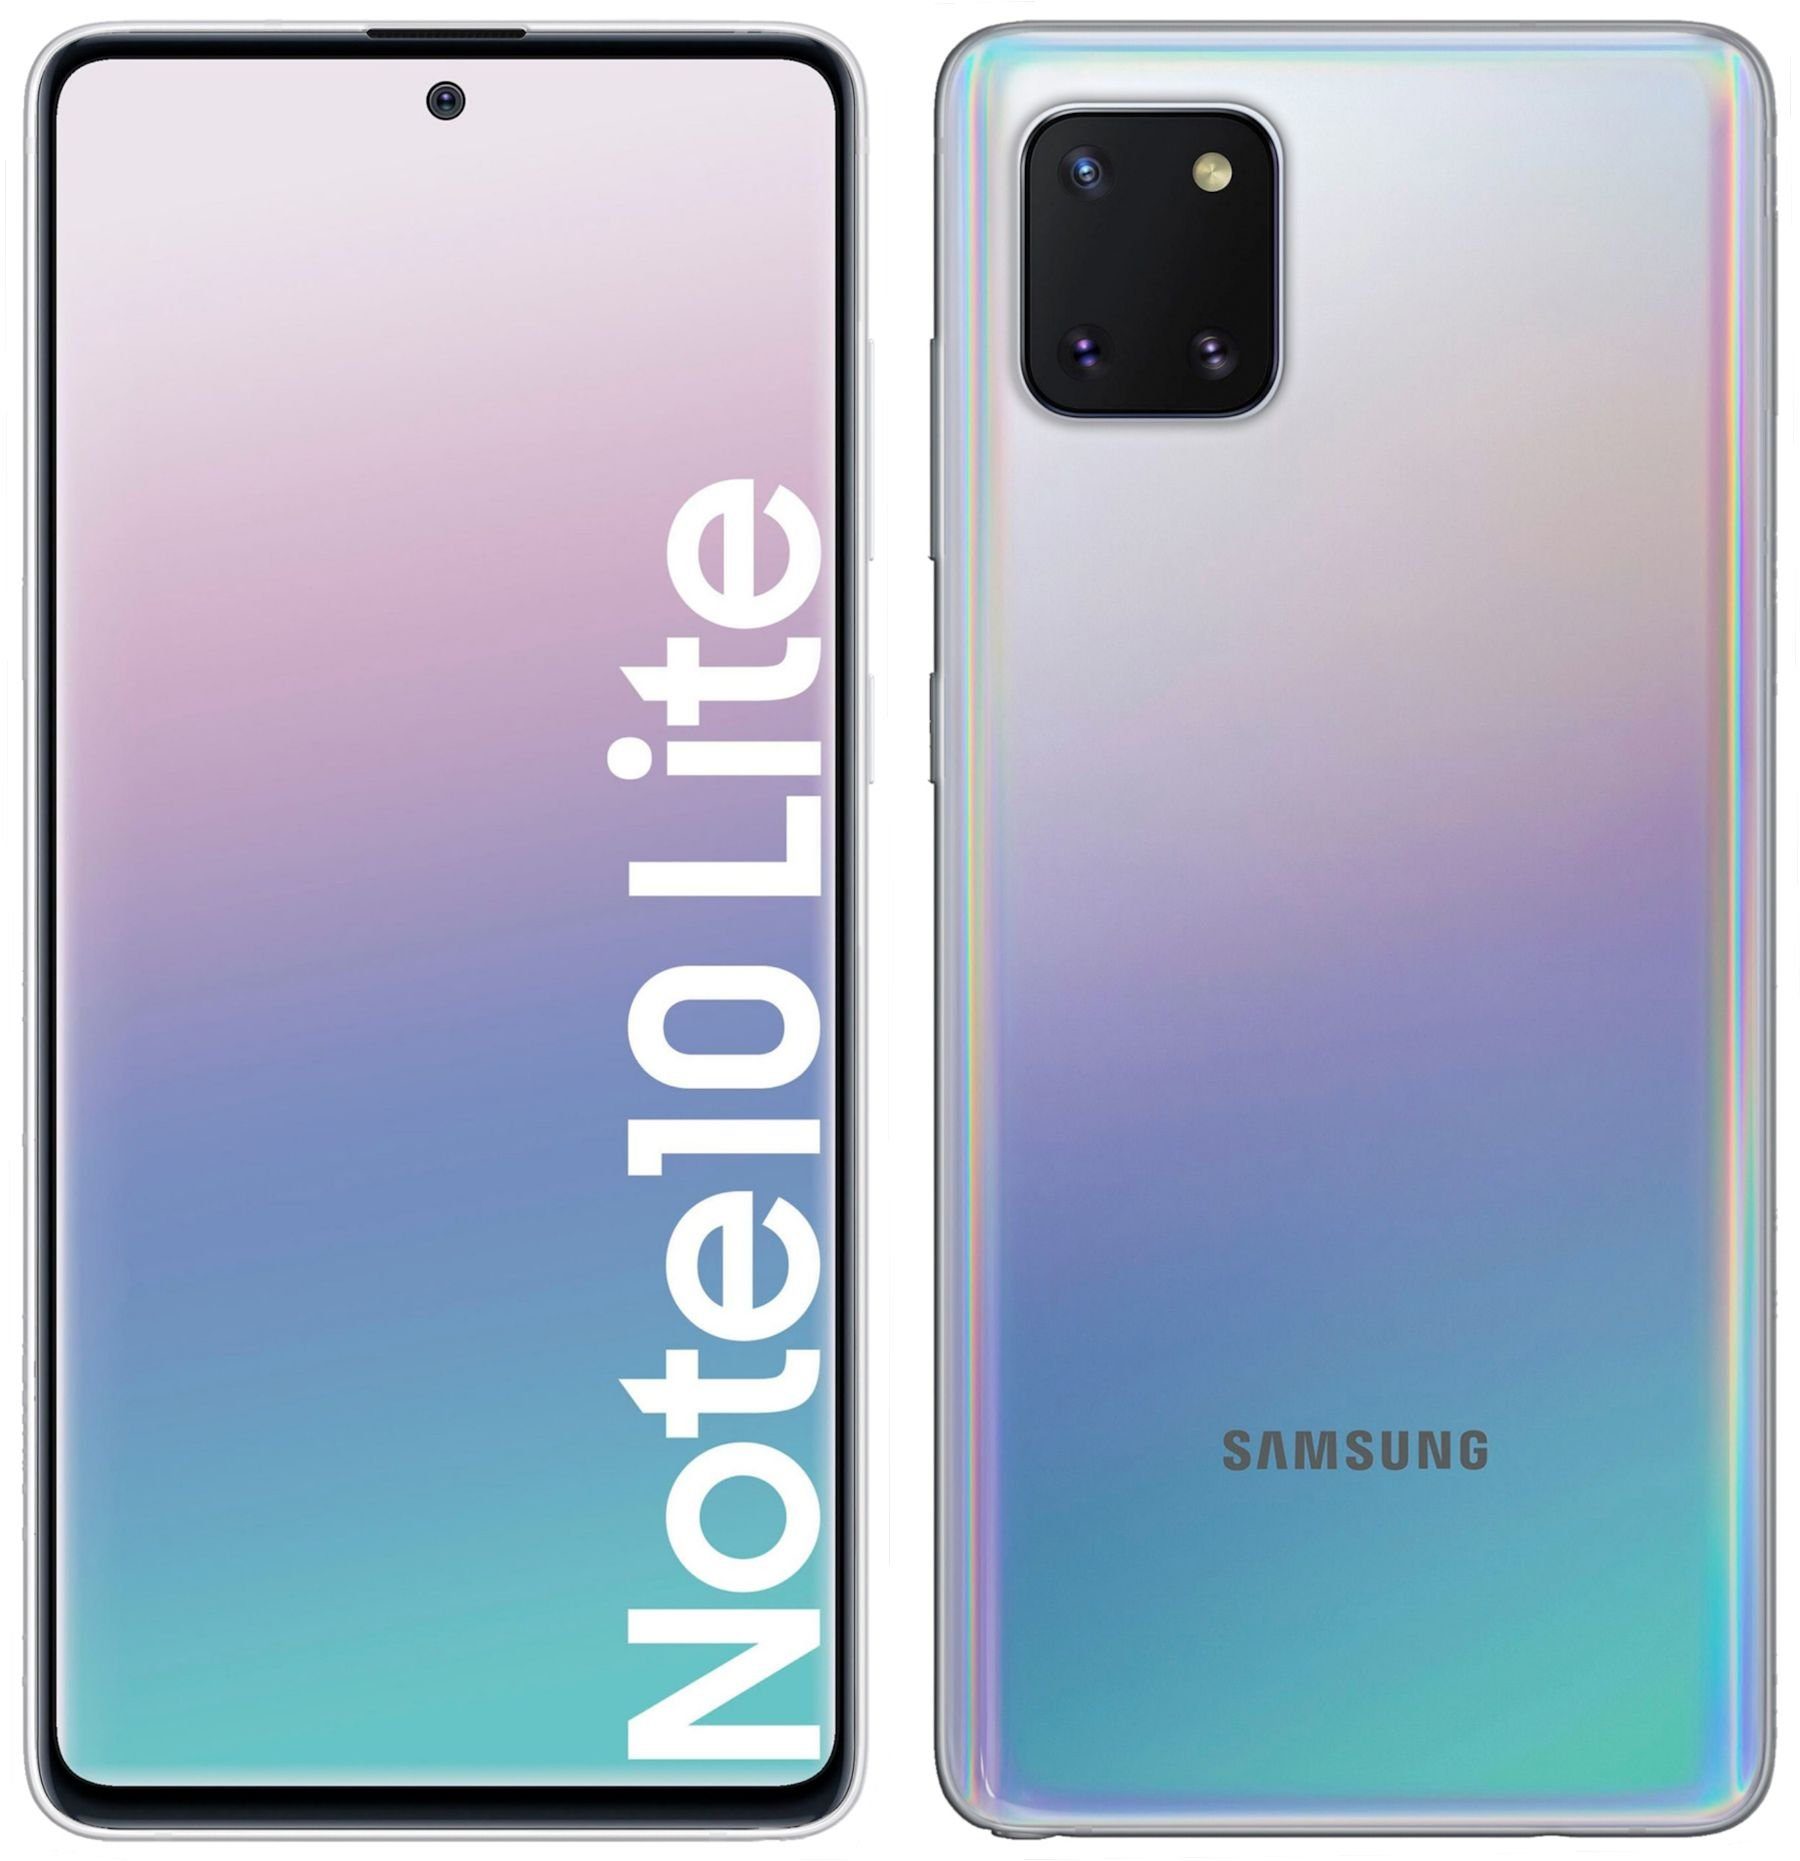 cofi1453 Handyhülle »Silikon Hülle für Samsung Galaxy Note 10 Lite«, Case  Cover Schutzhülle Bumper online kaufen | OTTO